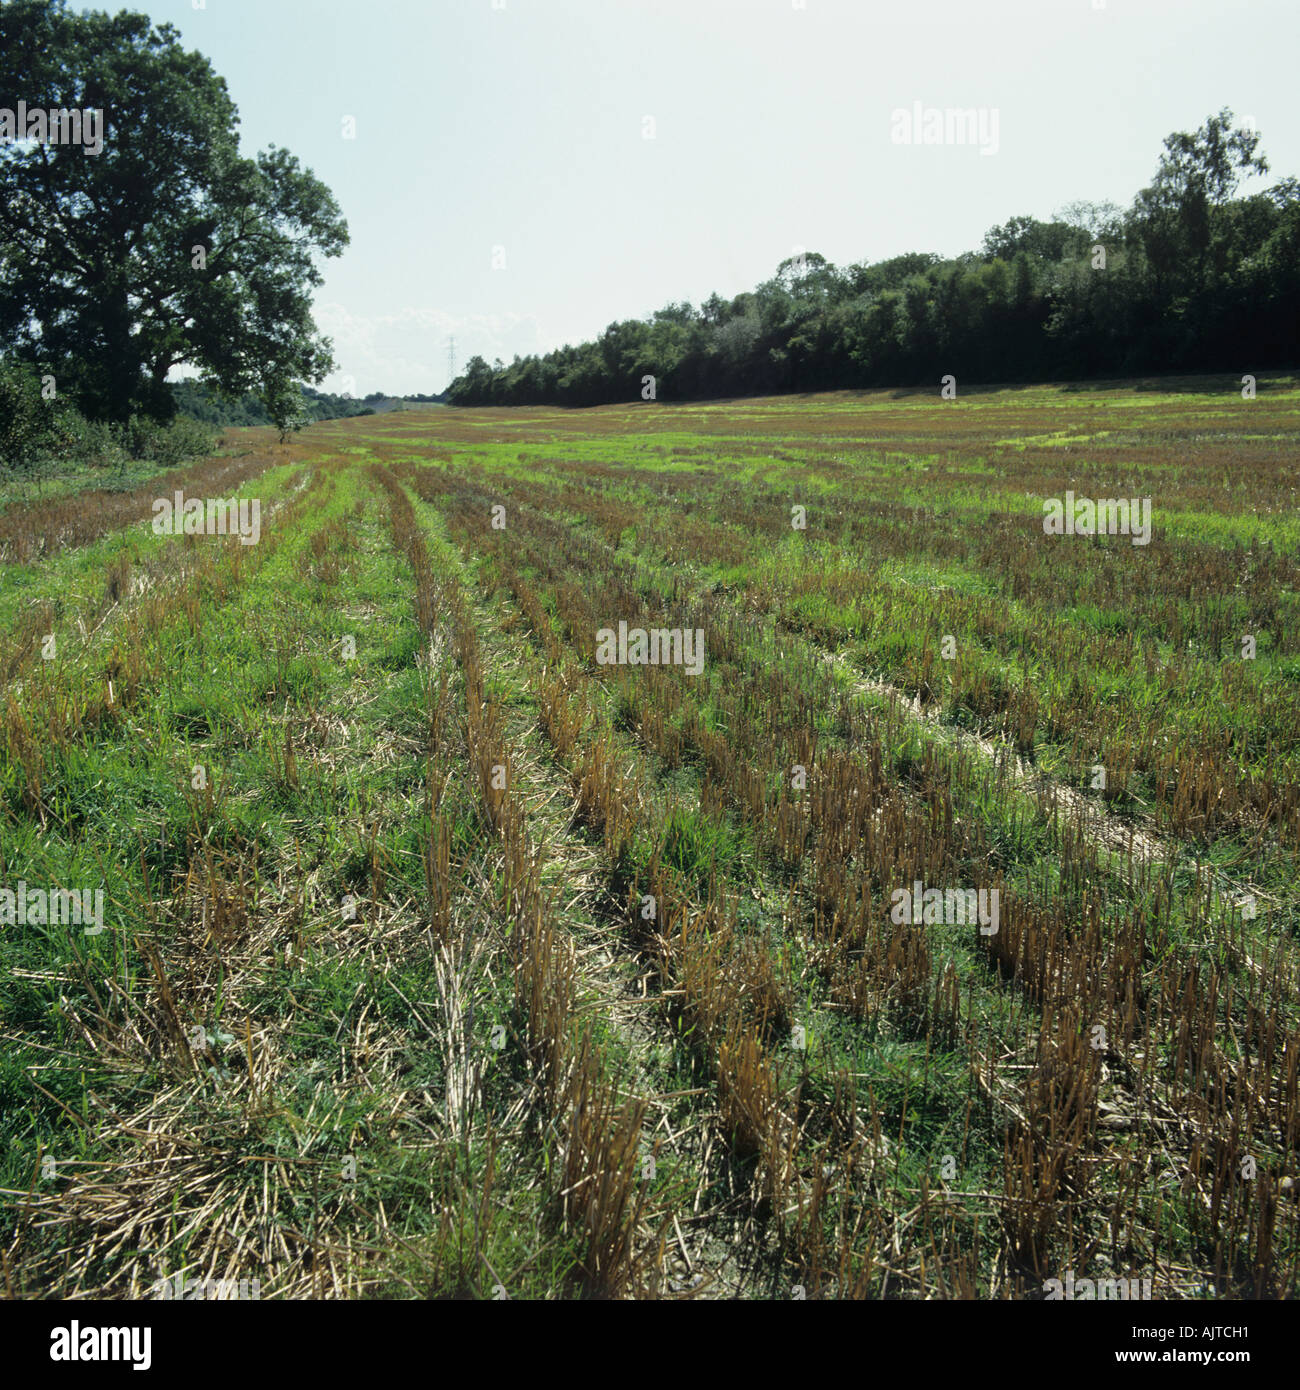 Vue de chaume de céréales avec des repousses de céréales et d'autres mauvaises herbes annuelles post récolte Banque D'Images